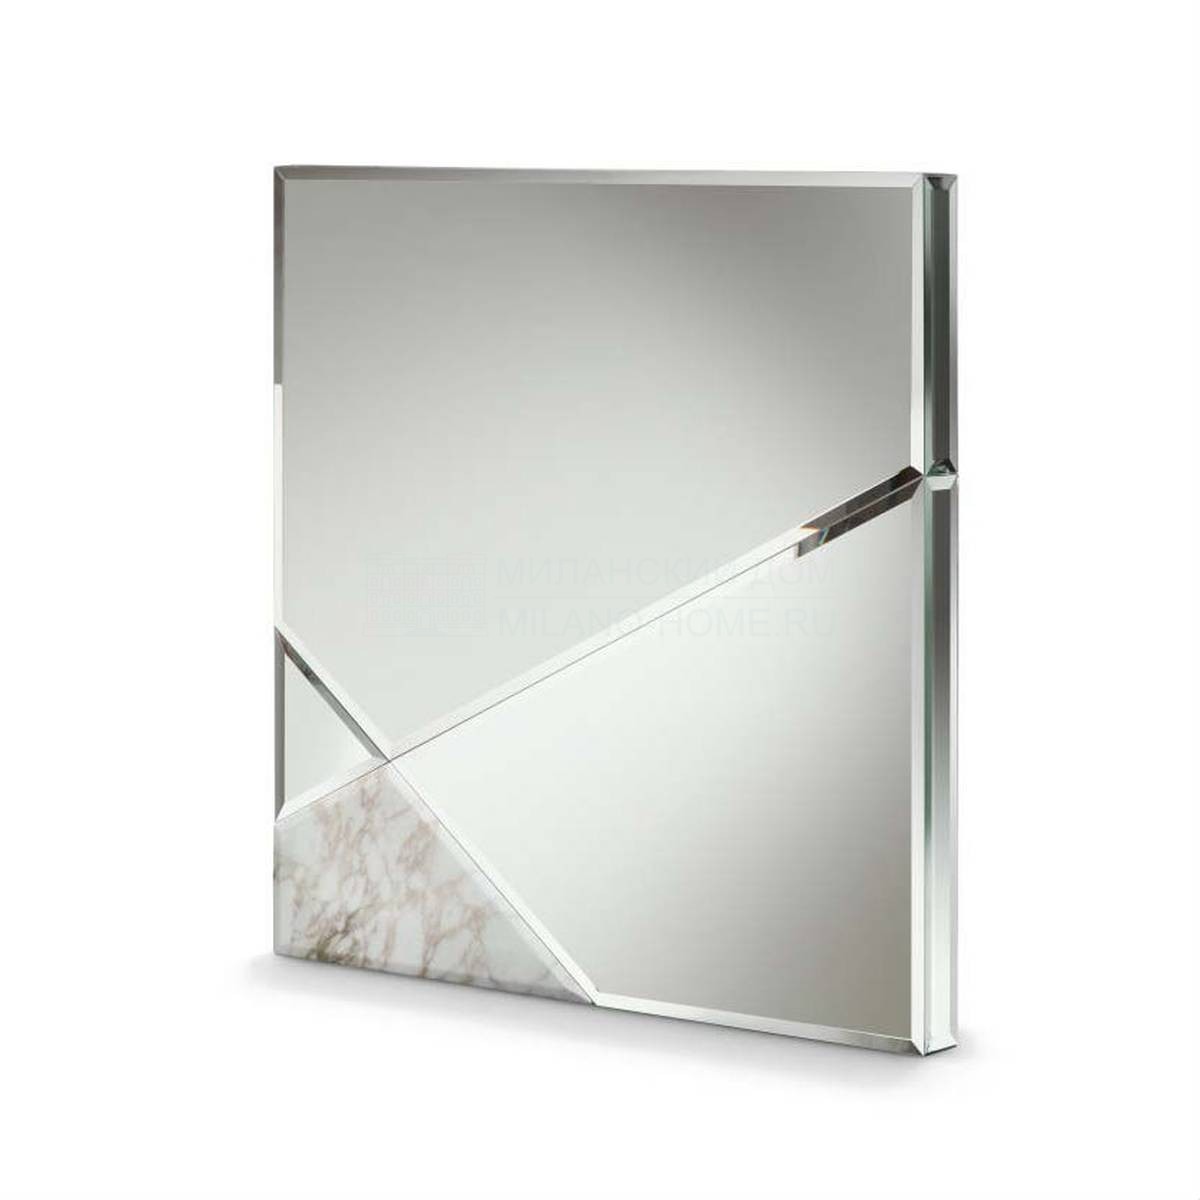 Зеркало настенное Esther mirror из Италии фабрики ANGELO CAPPELLINI OPERA